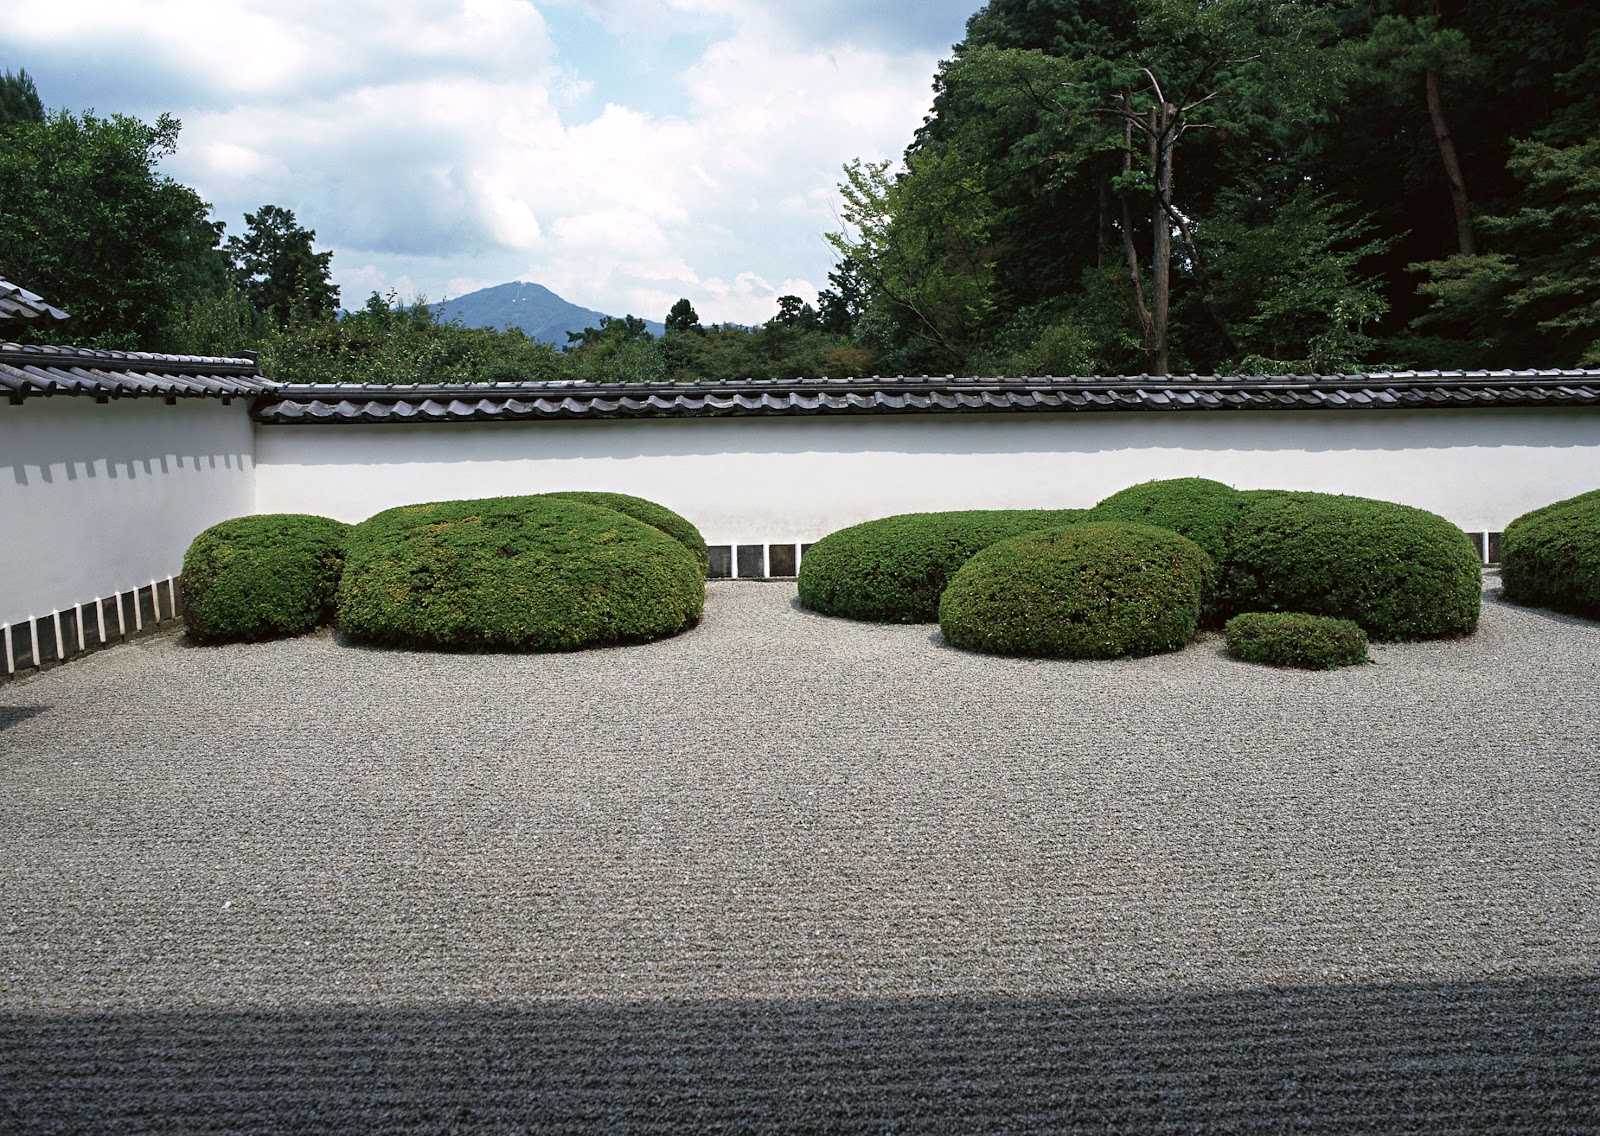 دانلود عکس باغ خشک ژاپنی با طراحی خاص با کیفیت بالا و کاملا رایگان